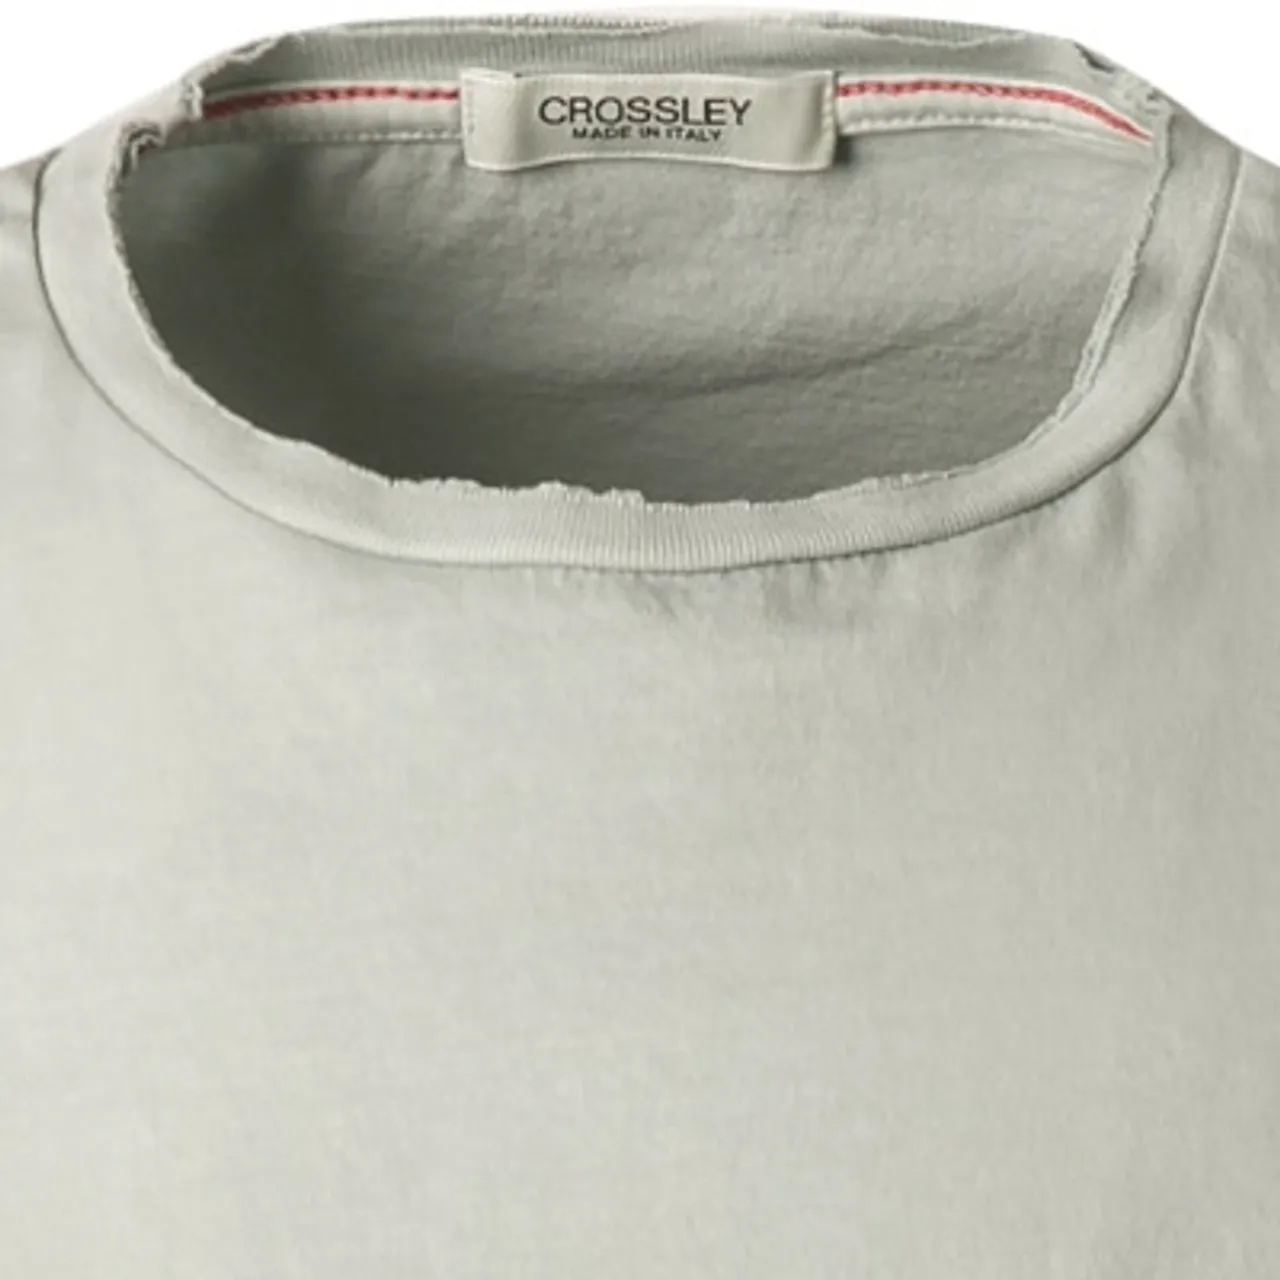 CROSSLEY Herren T-Shirt grau Baumwolle